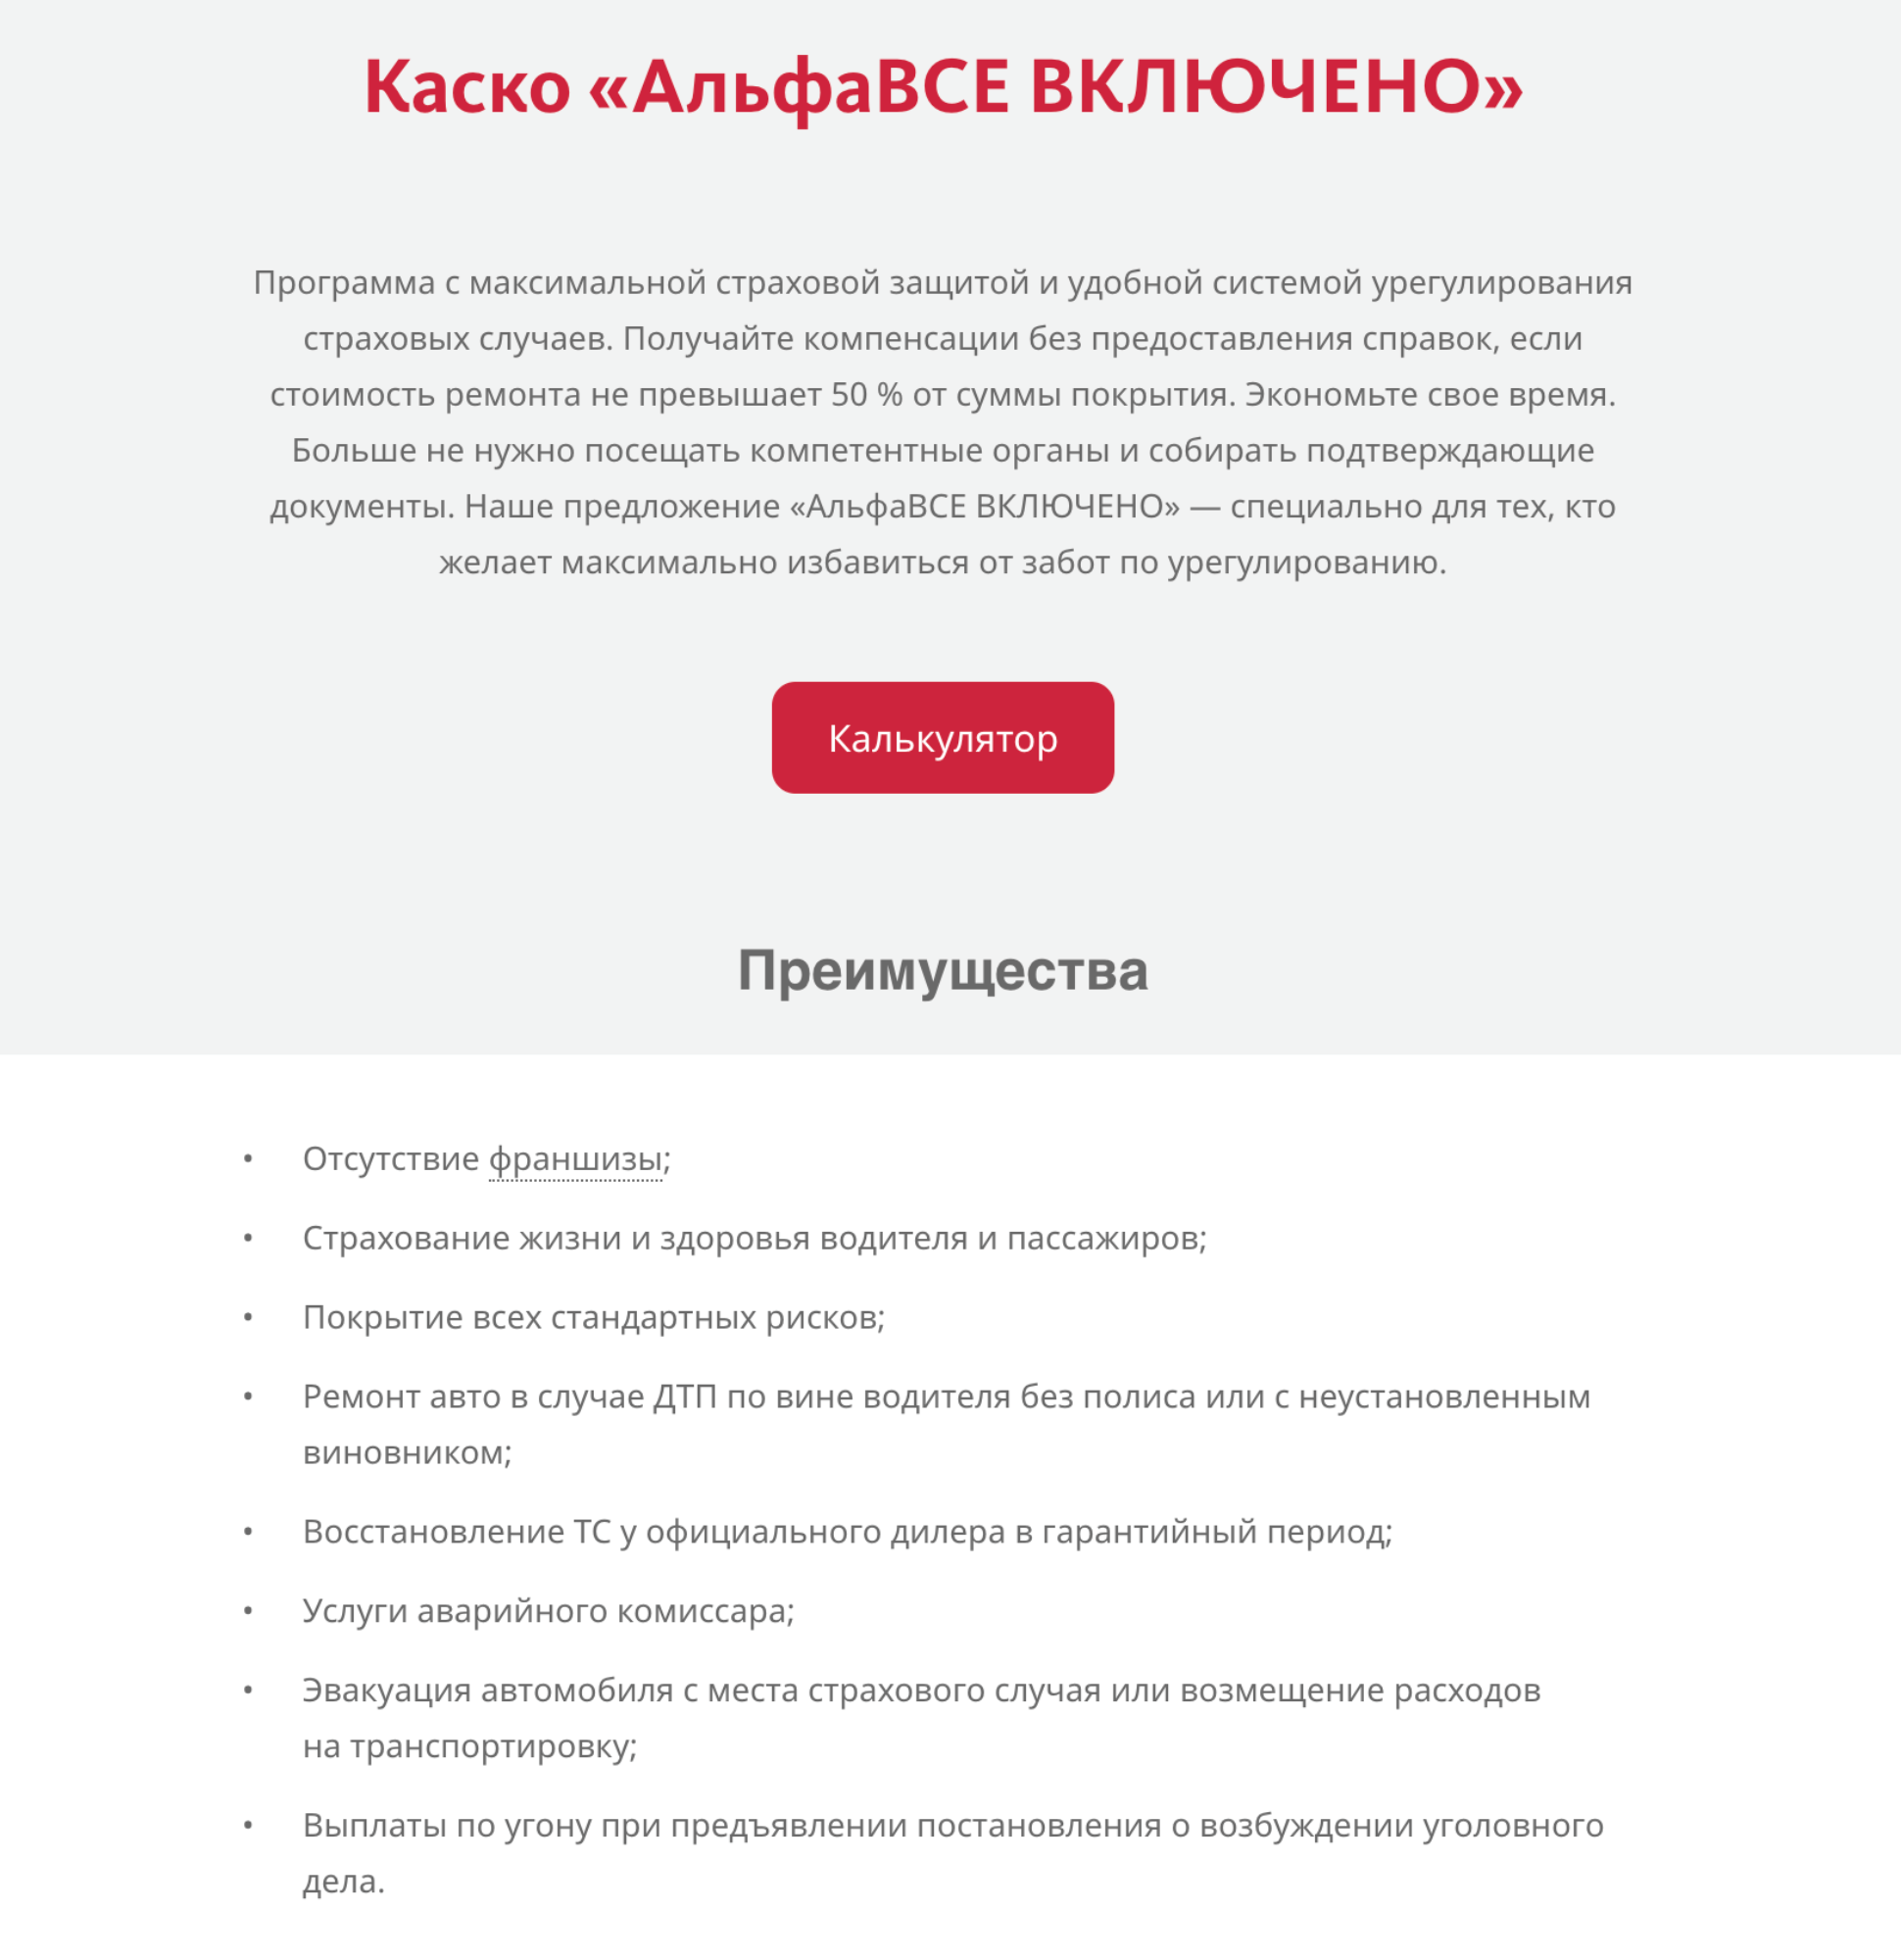 В другом пакете услуги аварийного комиссара включены. Источник: alfastrah.ru